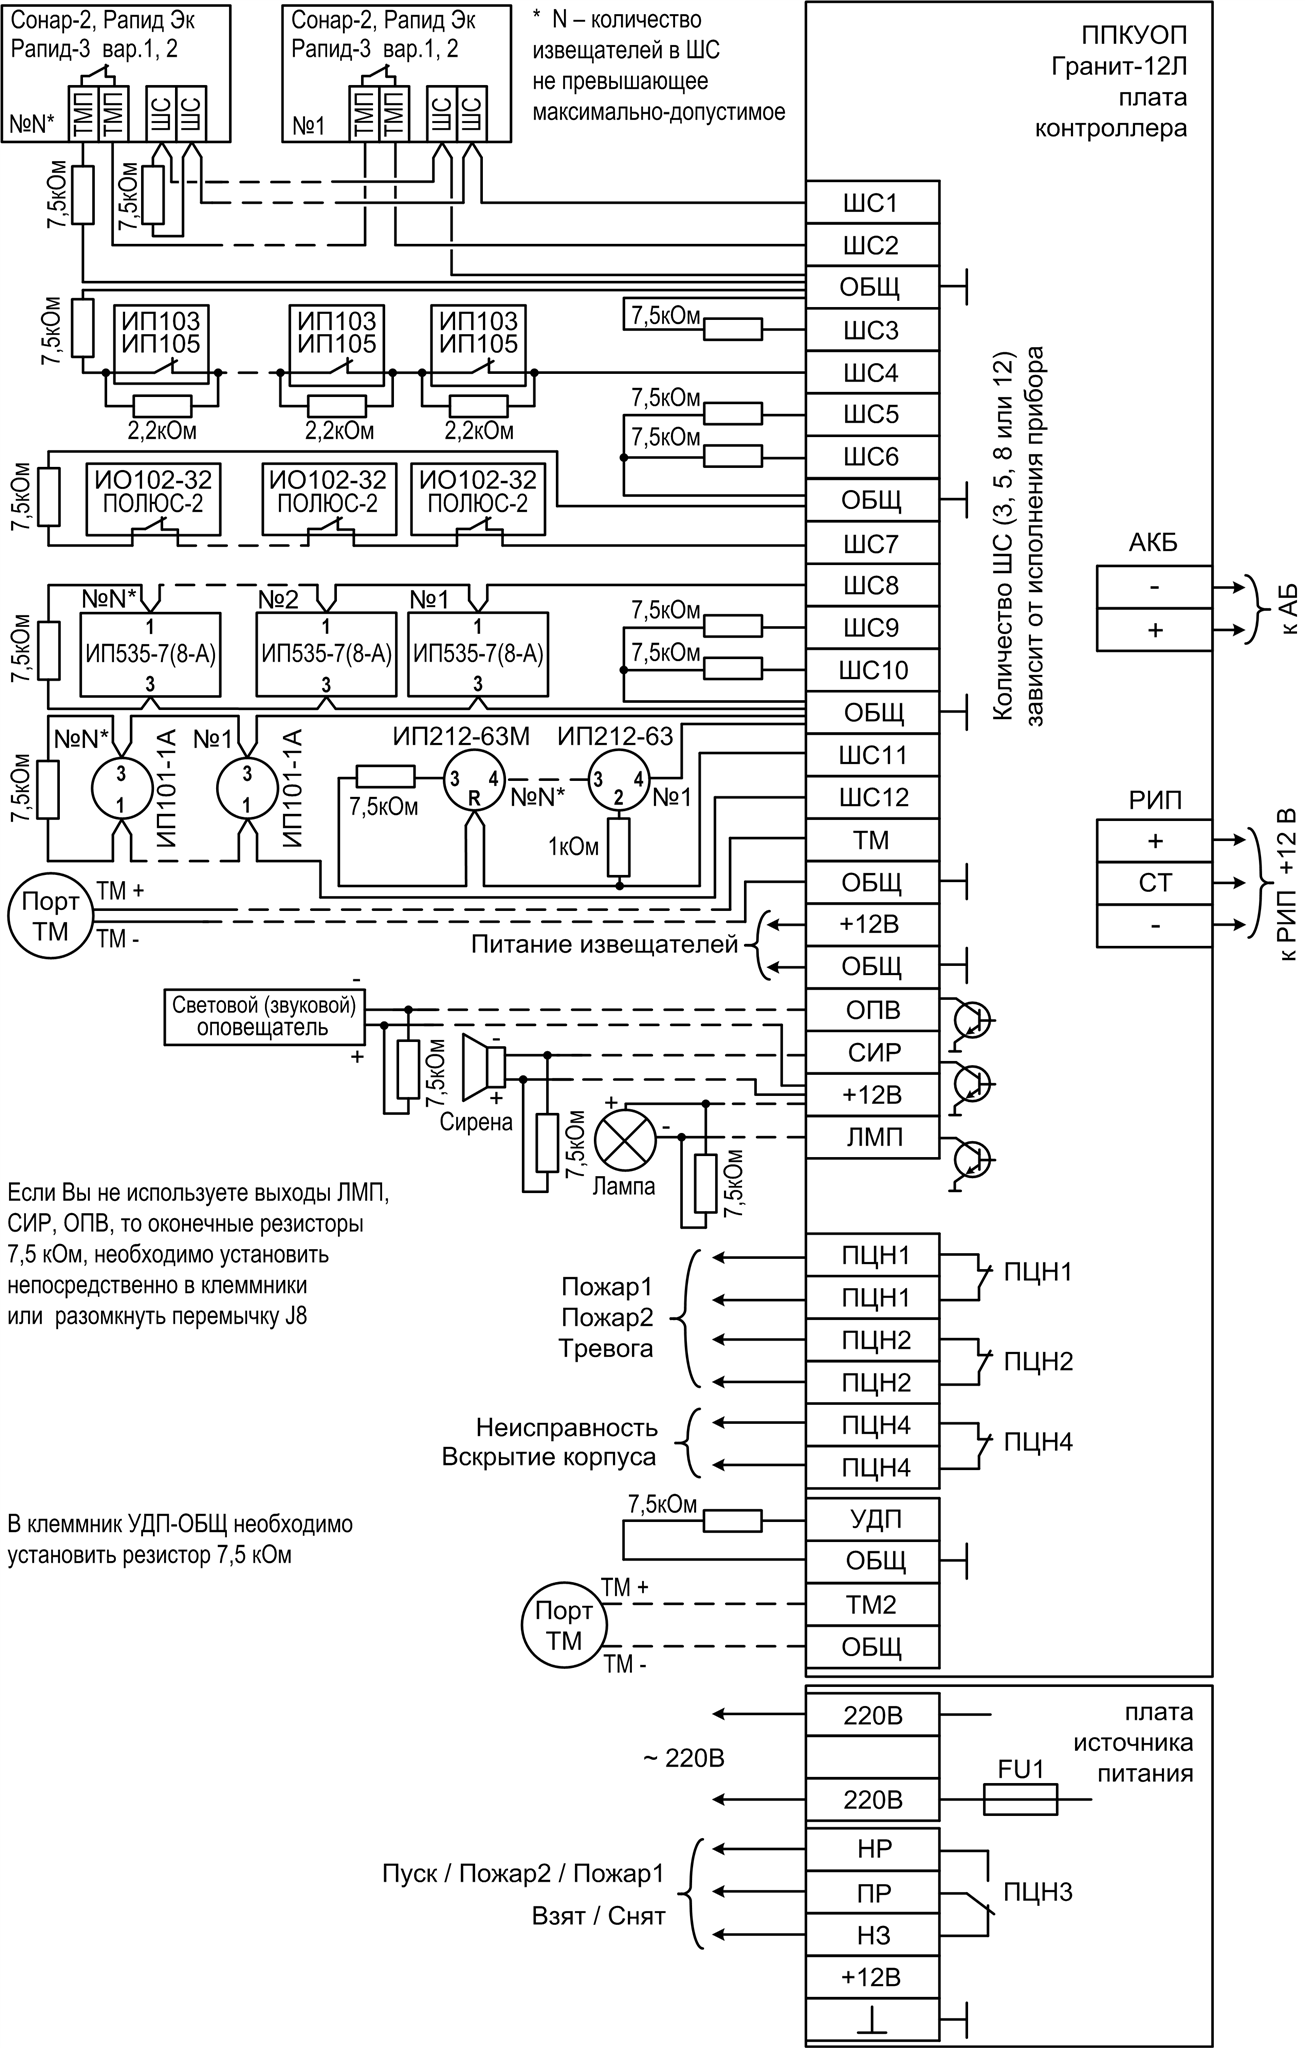 Прибор системы Лавина «Гранит-12Л» с коммуникатором. Изображение  5